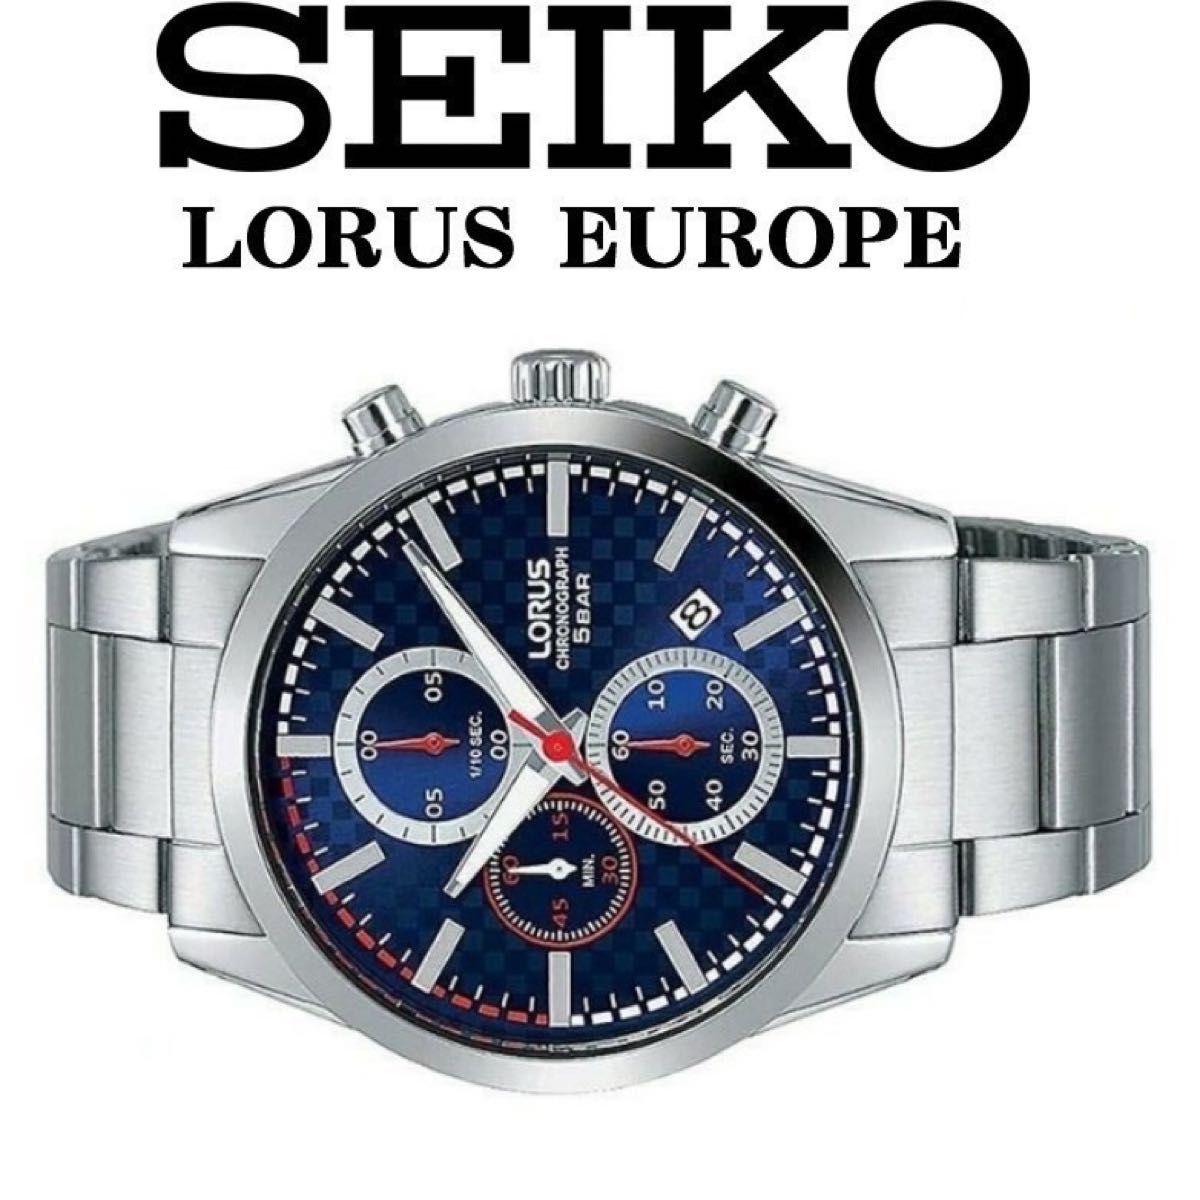 ★ 激レア ★ 日本未発売 セイコー LORUS ローラス 腕時計 クロノグラフ SEIKO ヨーロッパ逆輸入 正規品 即日発送